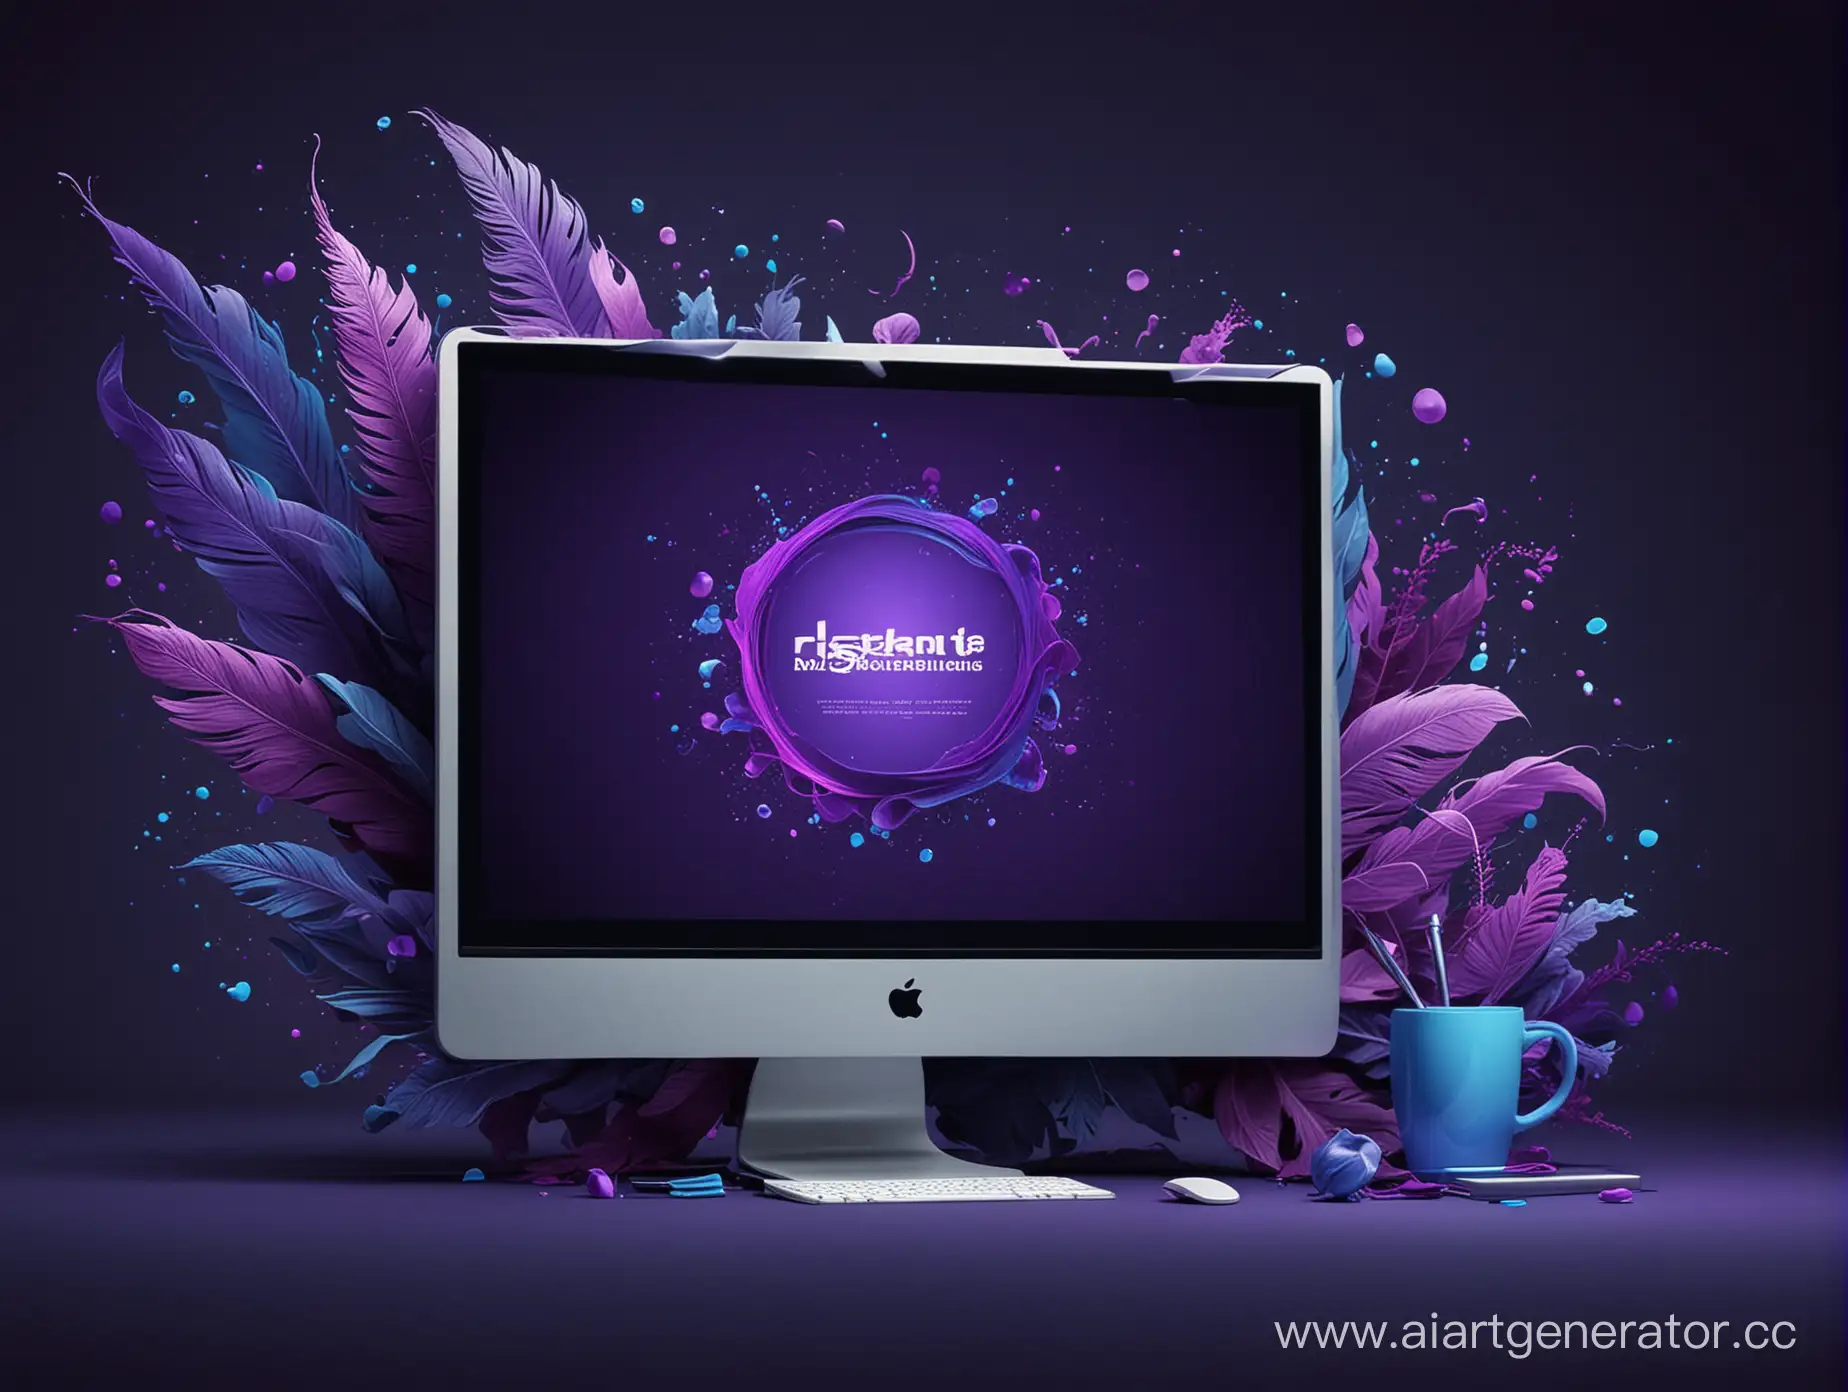 Картинка для создания сайта на темном фоне с использованием синего и фиолетового цвета